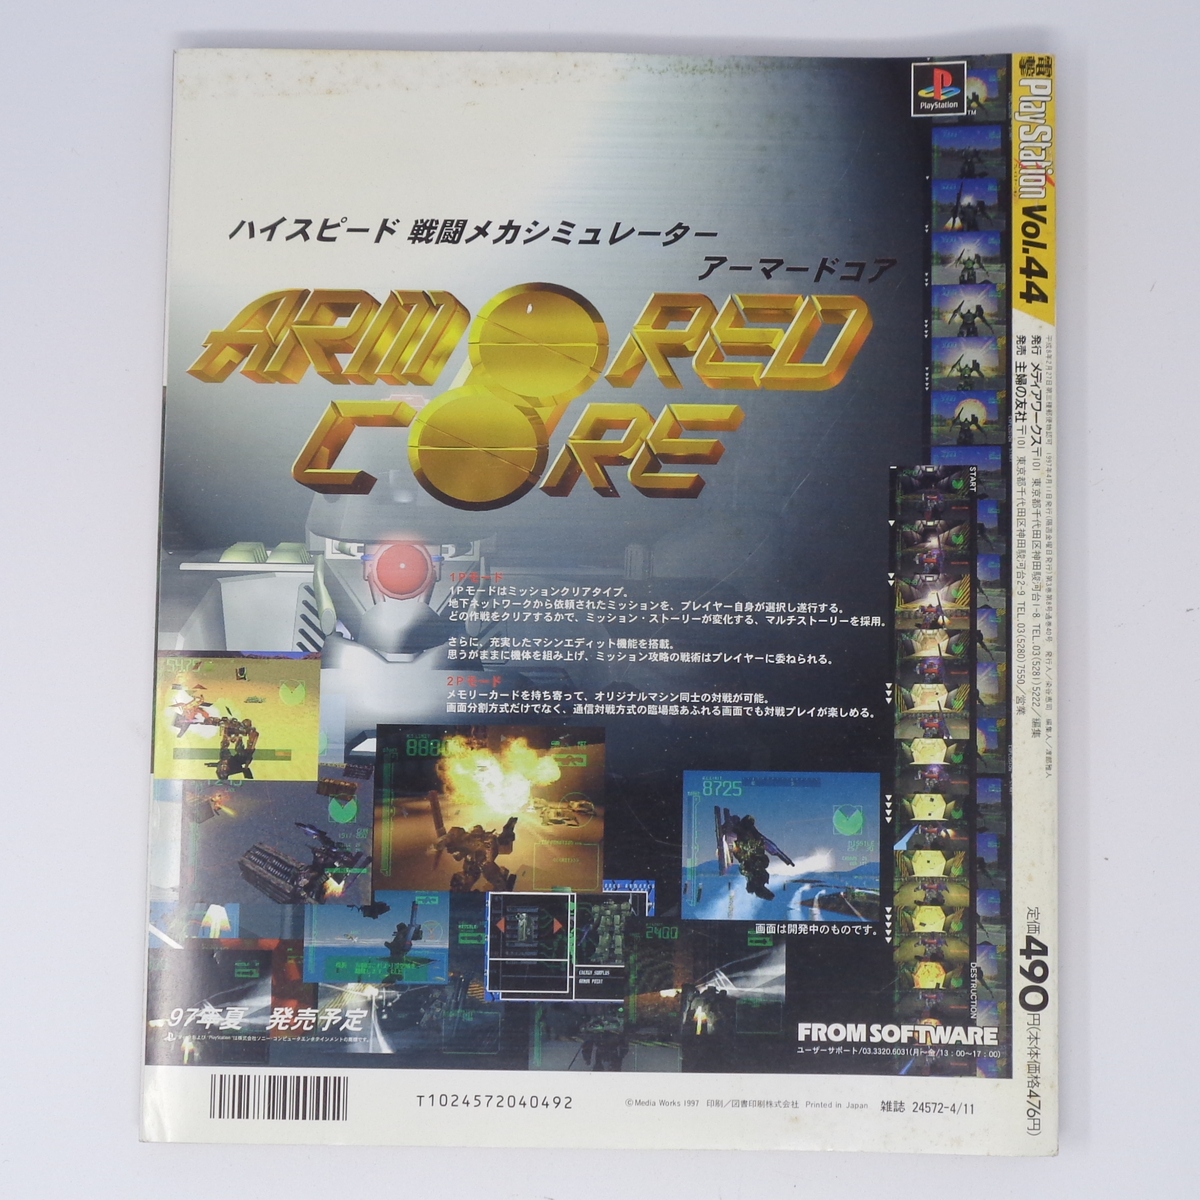 電撃PlayStation 1997年4月11日号Vol.44 付録メモリーカードシール未使用/FF7/電撃プレイステーション/ゲーム雑誌[Free Shipping]の画像2